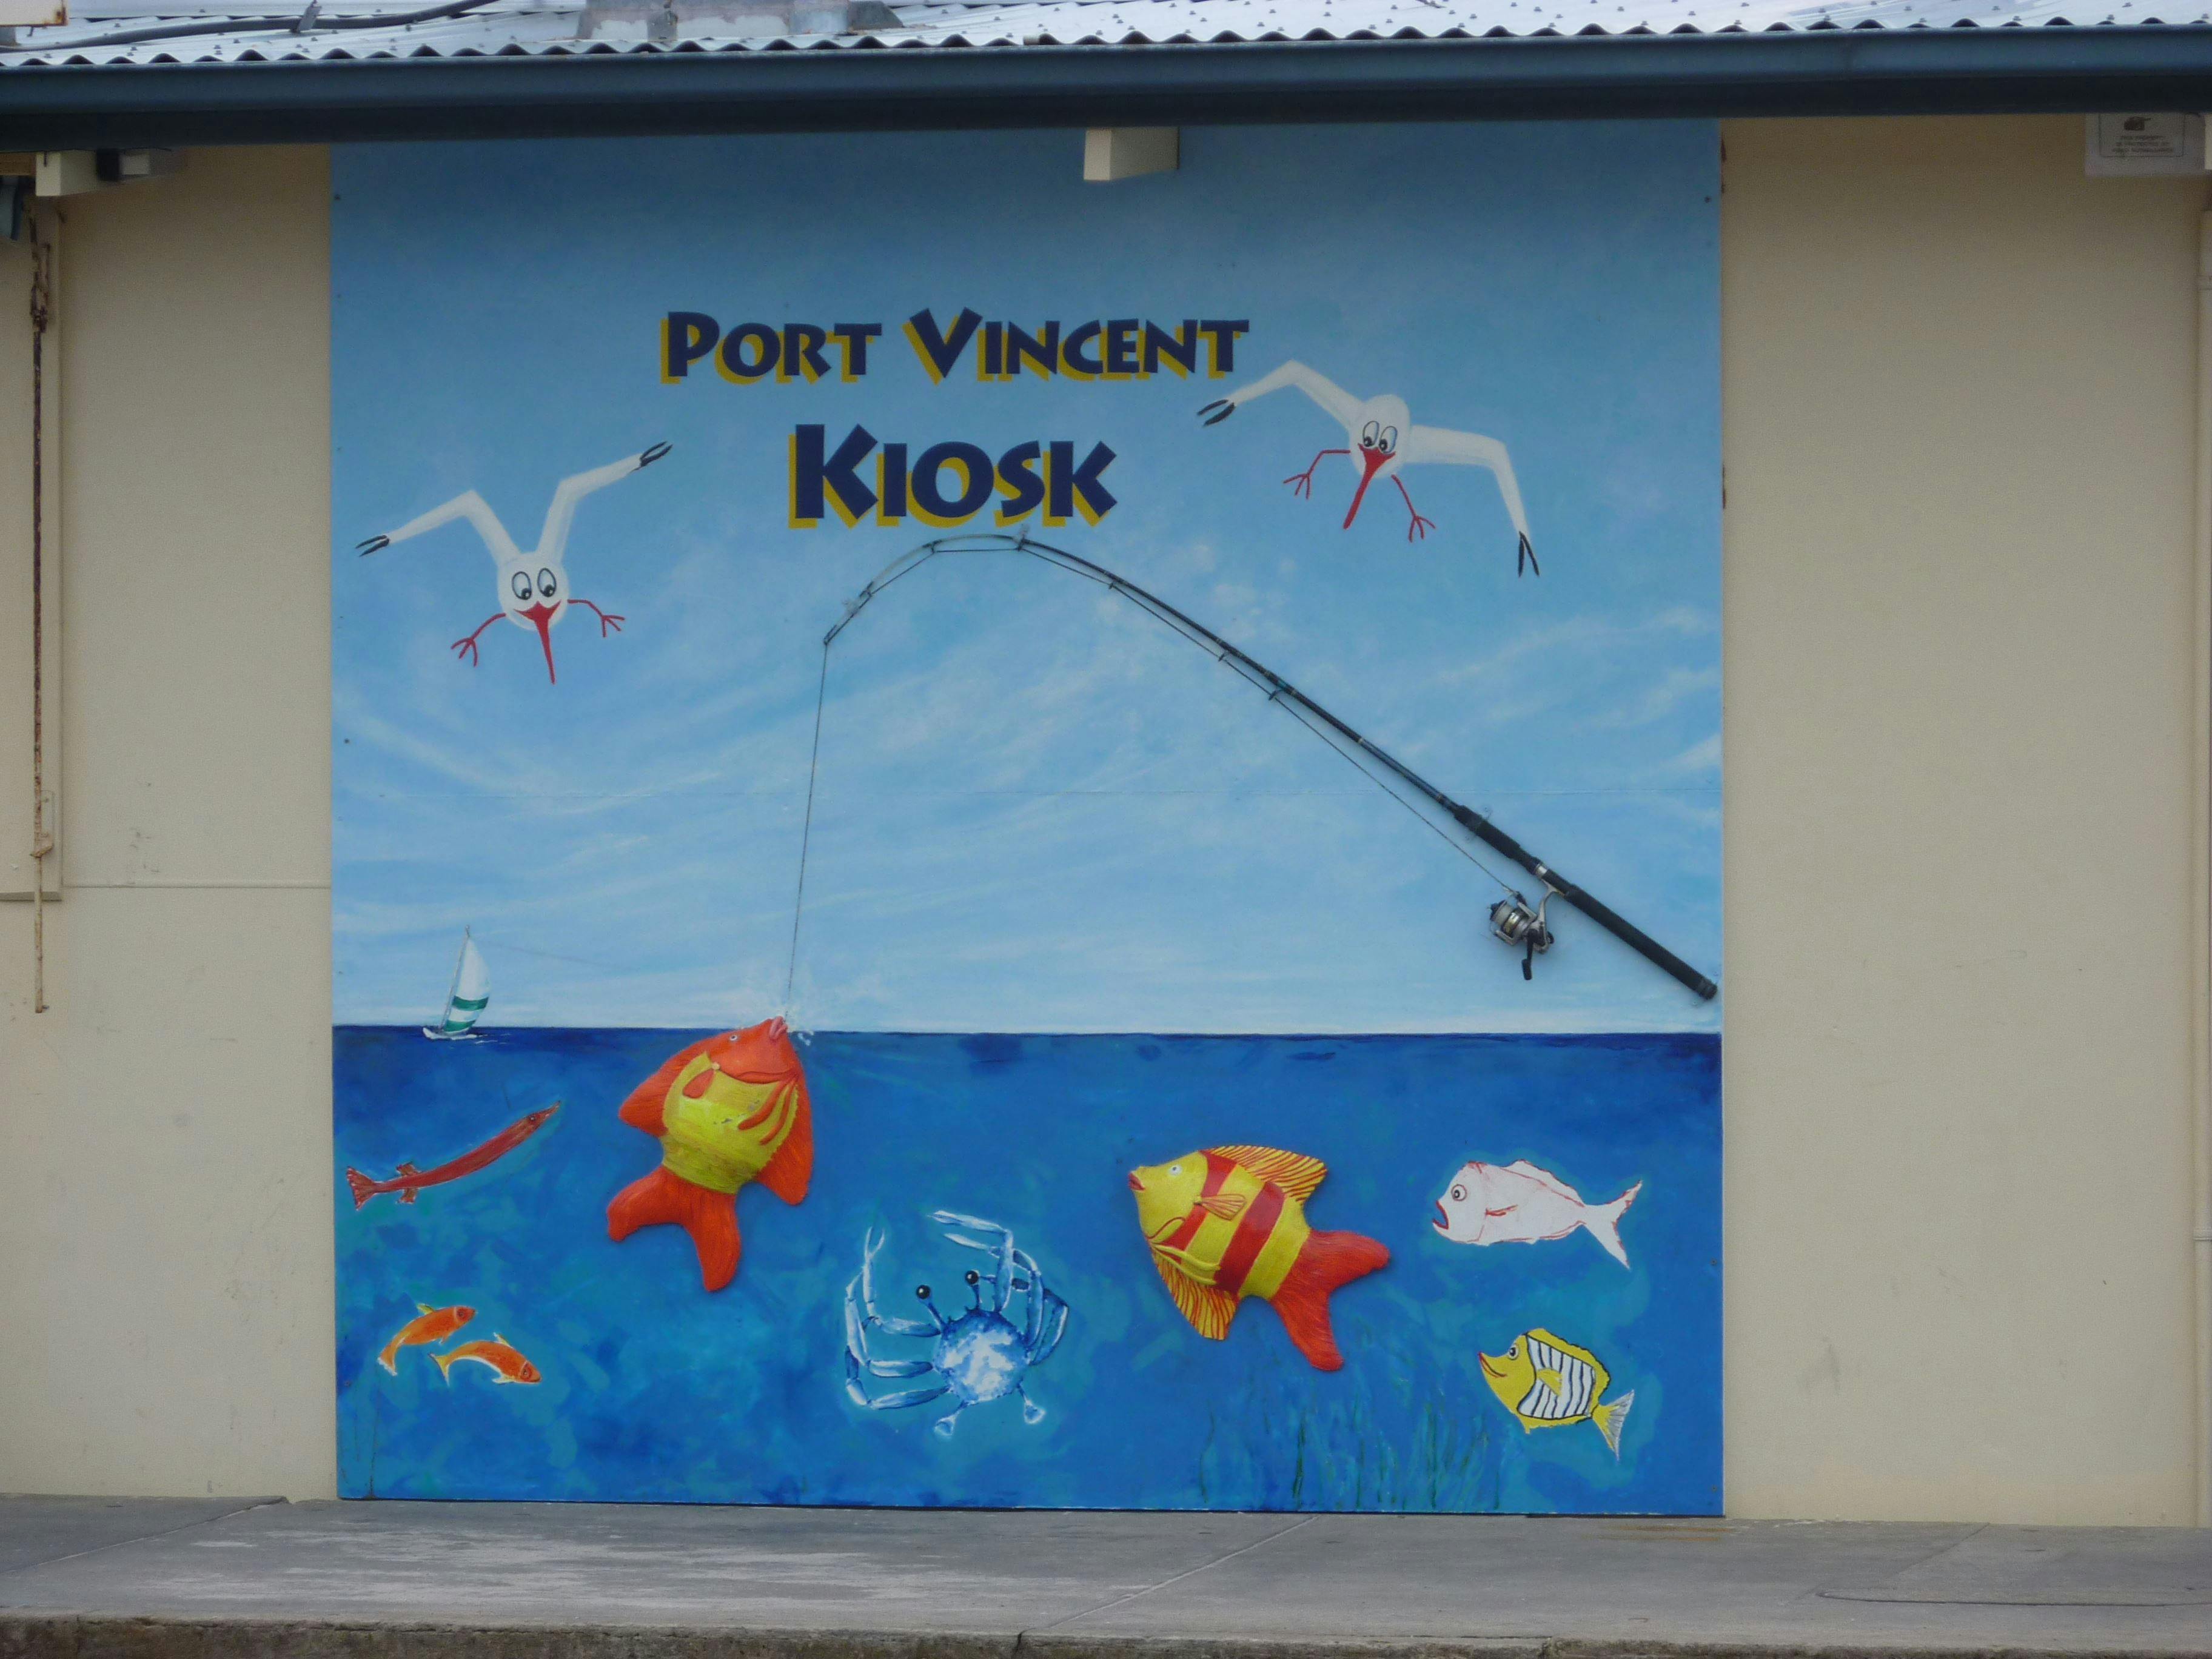 Port Vincent Kiosk